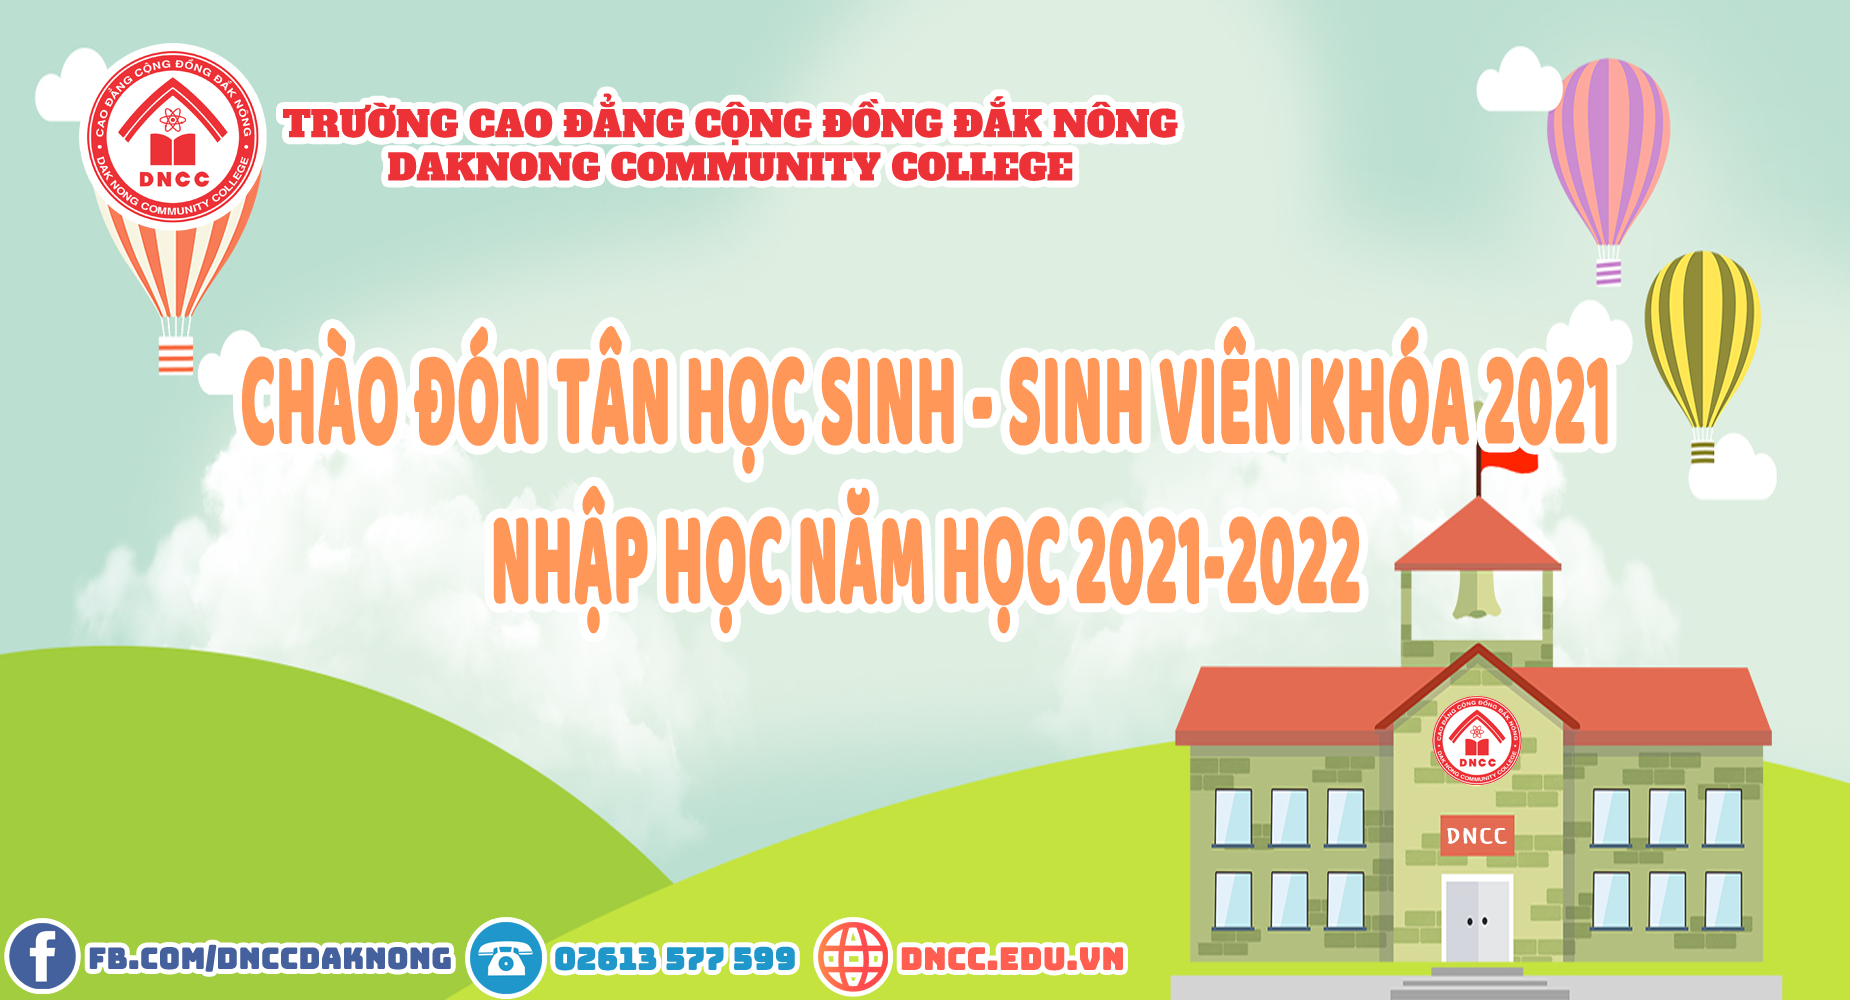 Trường Cao đẳng Cộng đồng Đắk Nông thông báo kế hoạch nhập học năm học 2021-2022 như sau